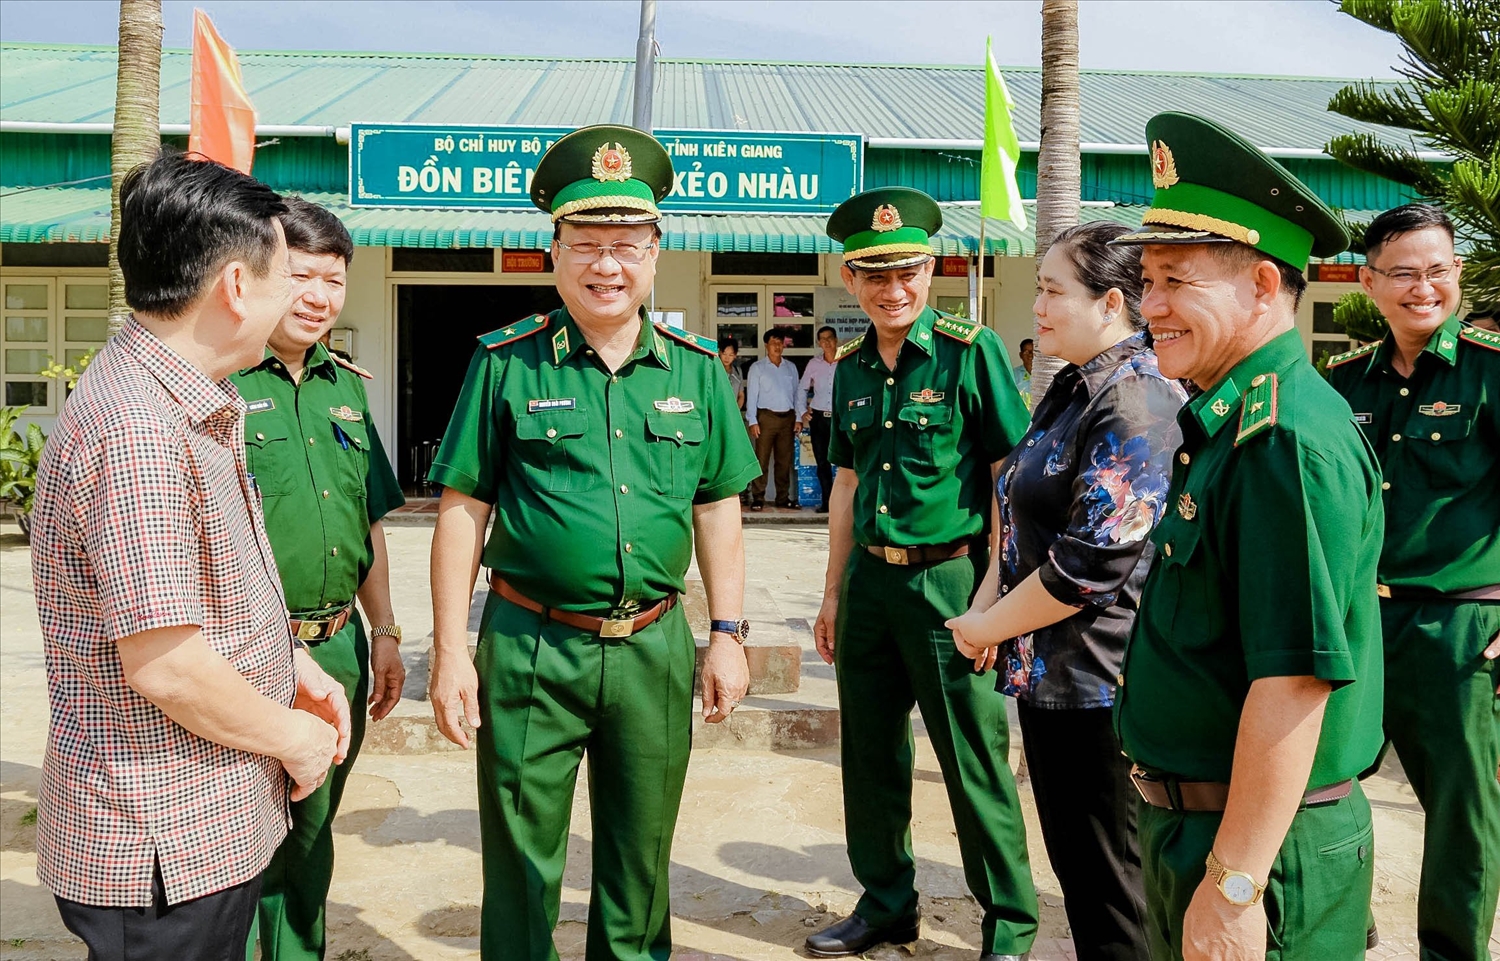 Thiếu tướng Nguyễn Hoài Phương trò chuyện cùng lãnh đạo huyện An Minh